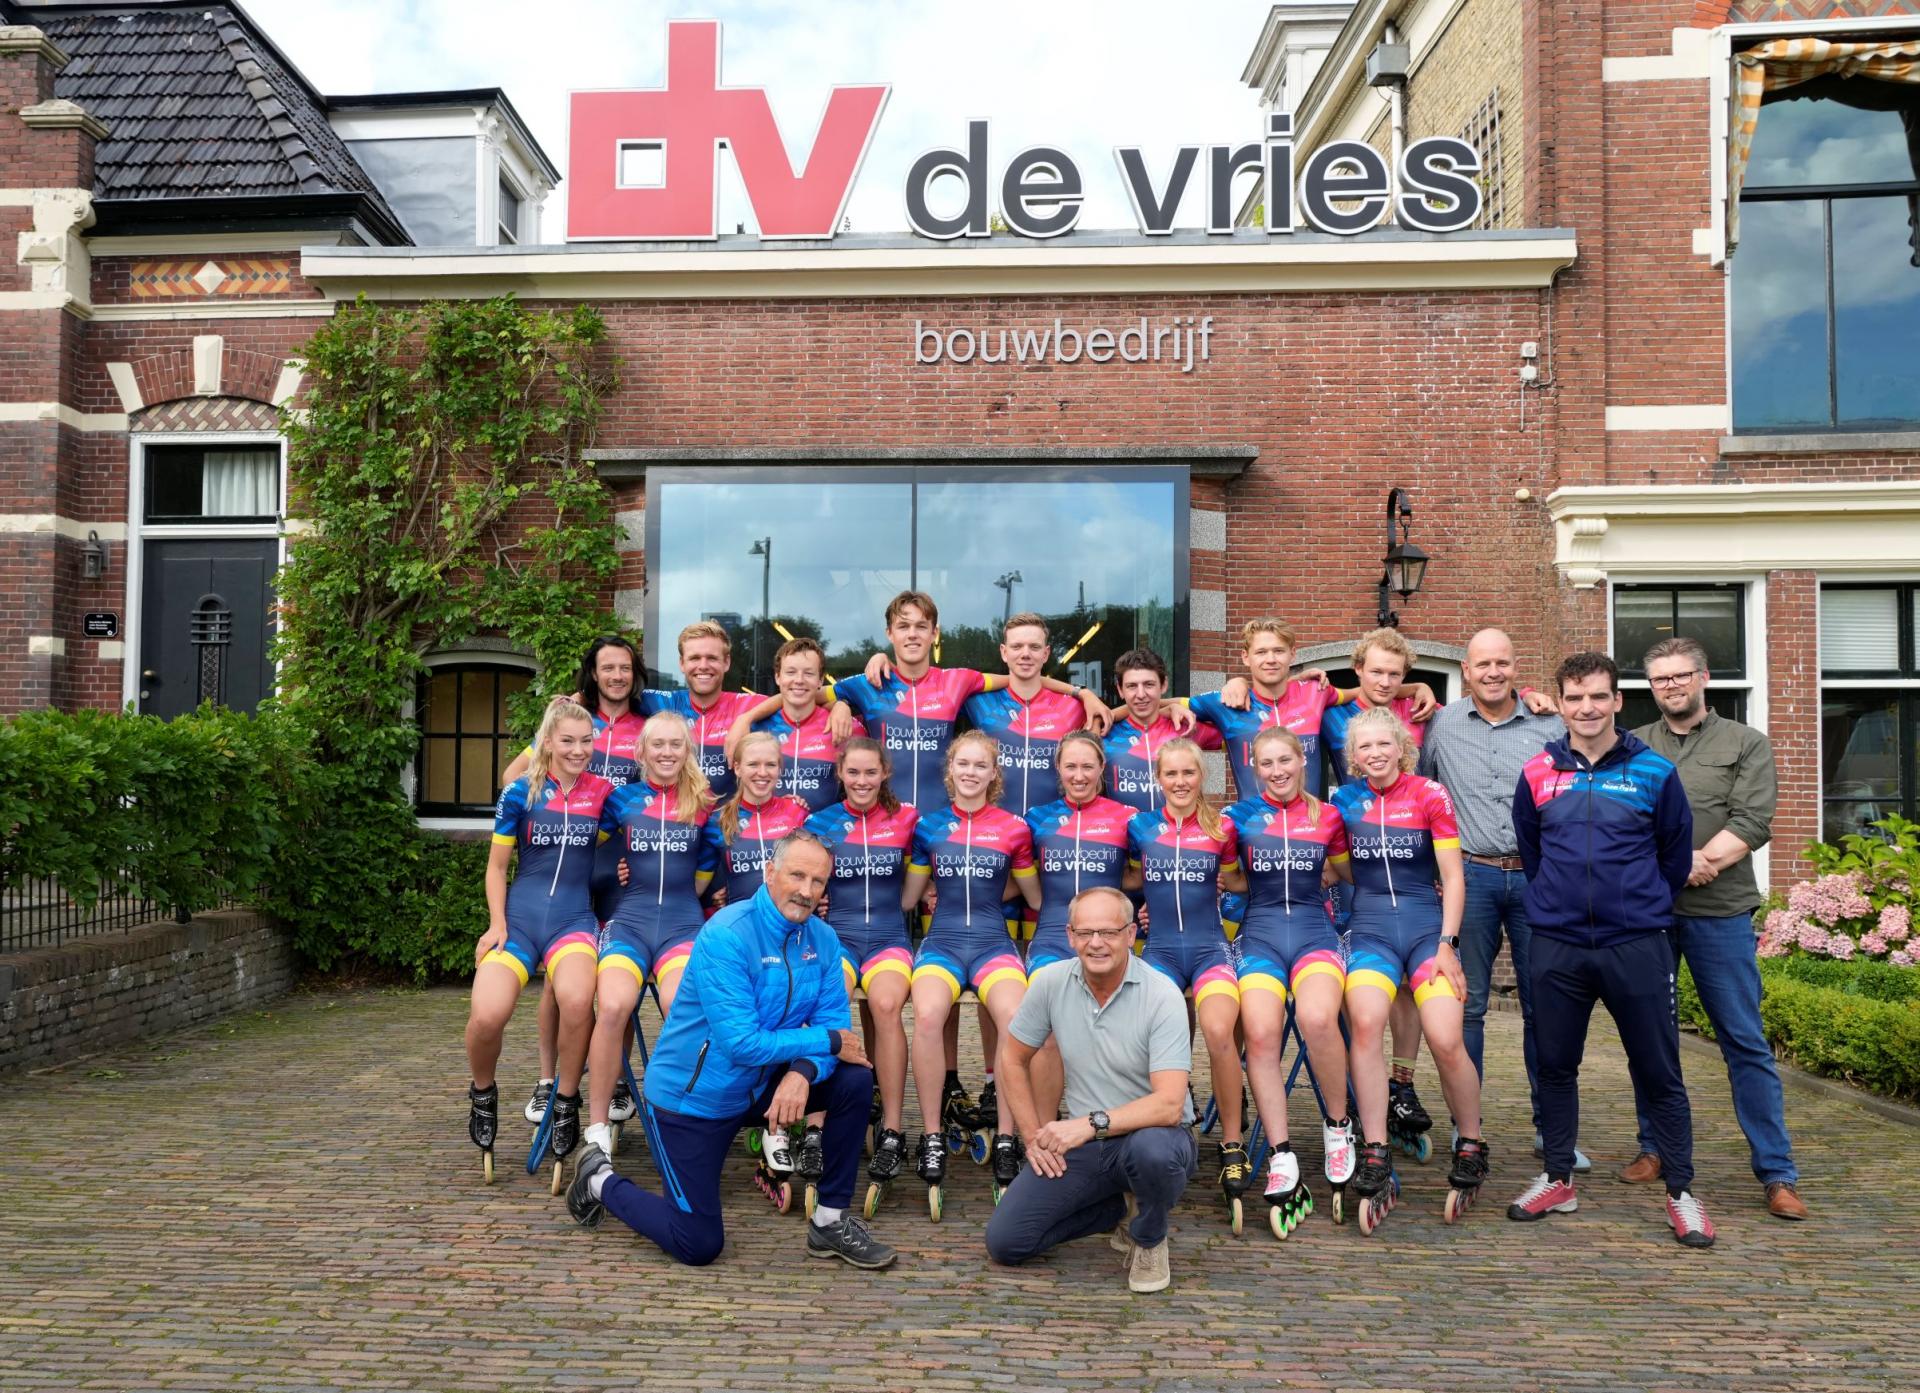 Team Frysk met directie Bouwbedrijf de Vries, trainer Siep en schaatser Bob de Jong